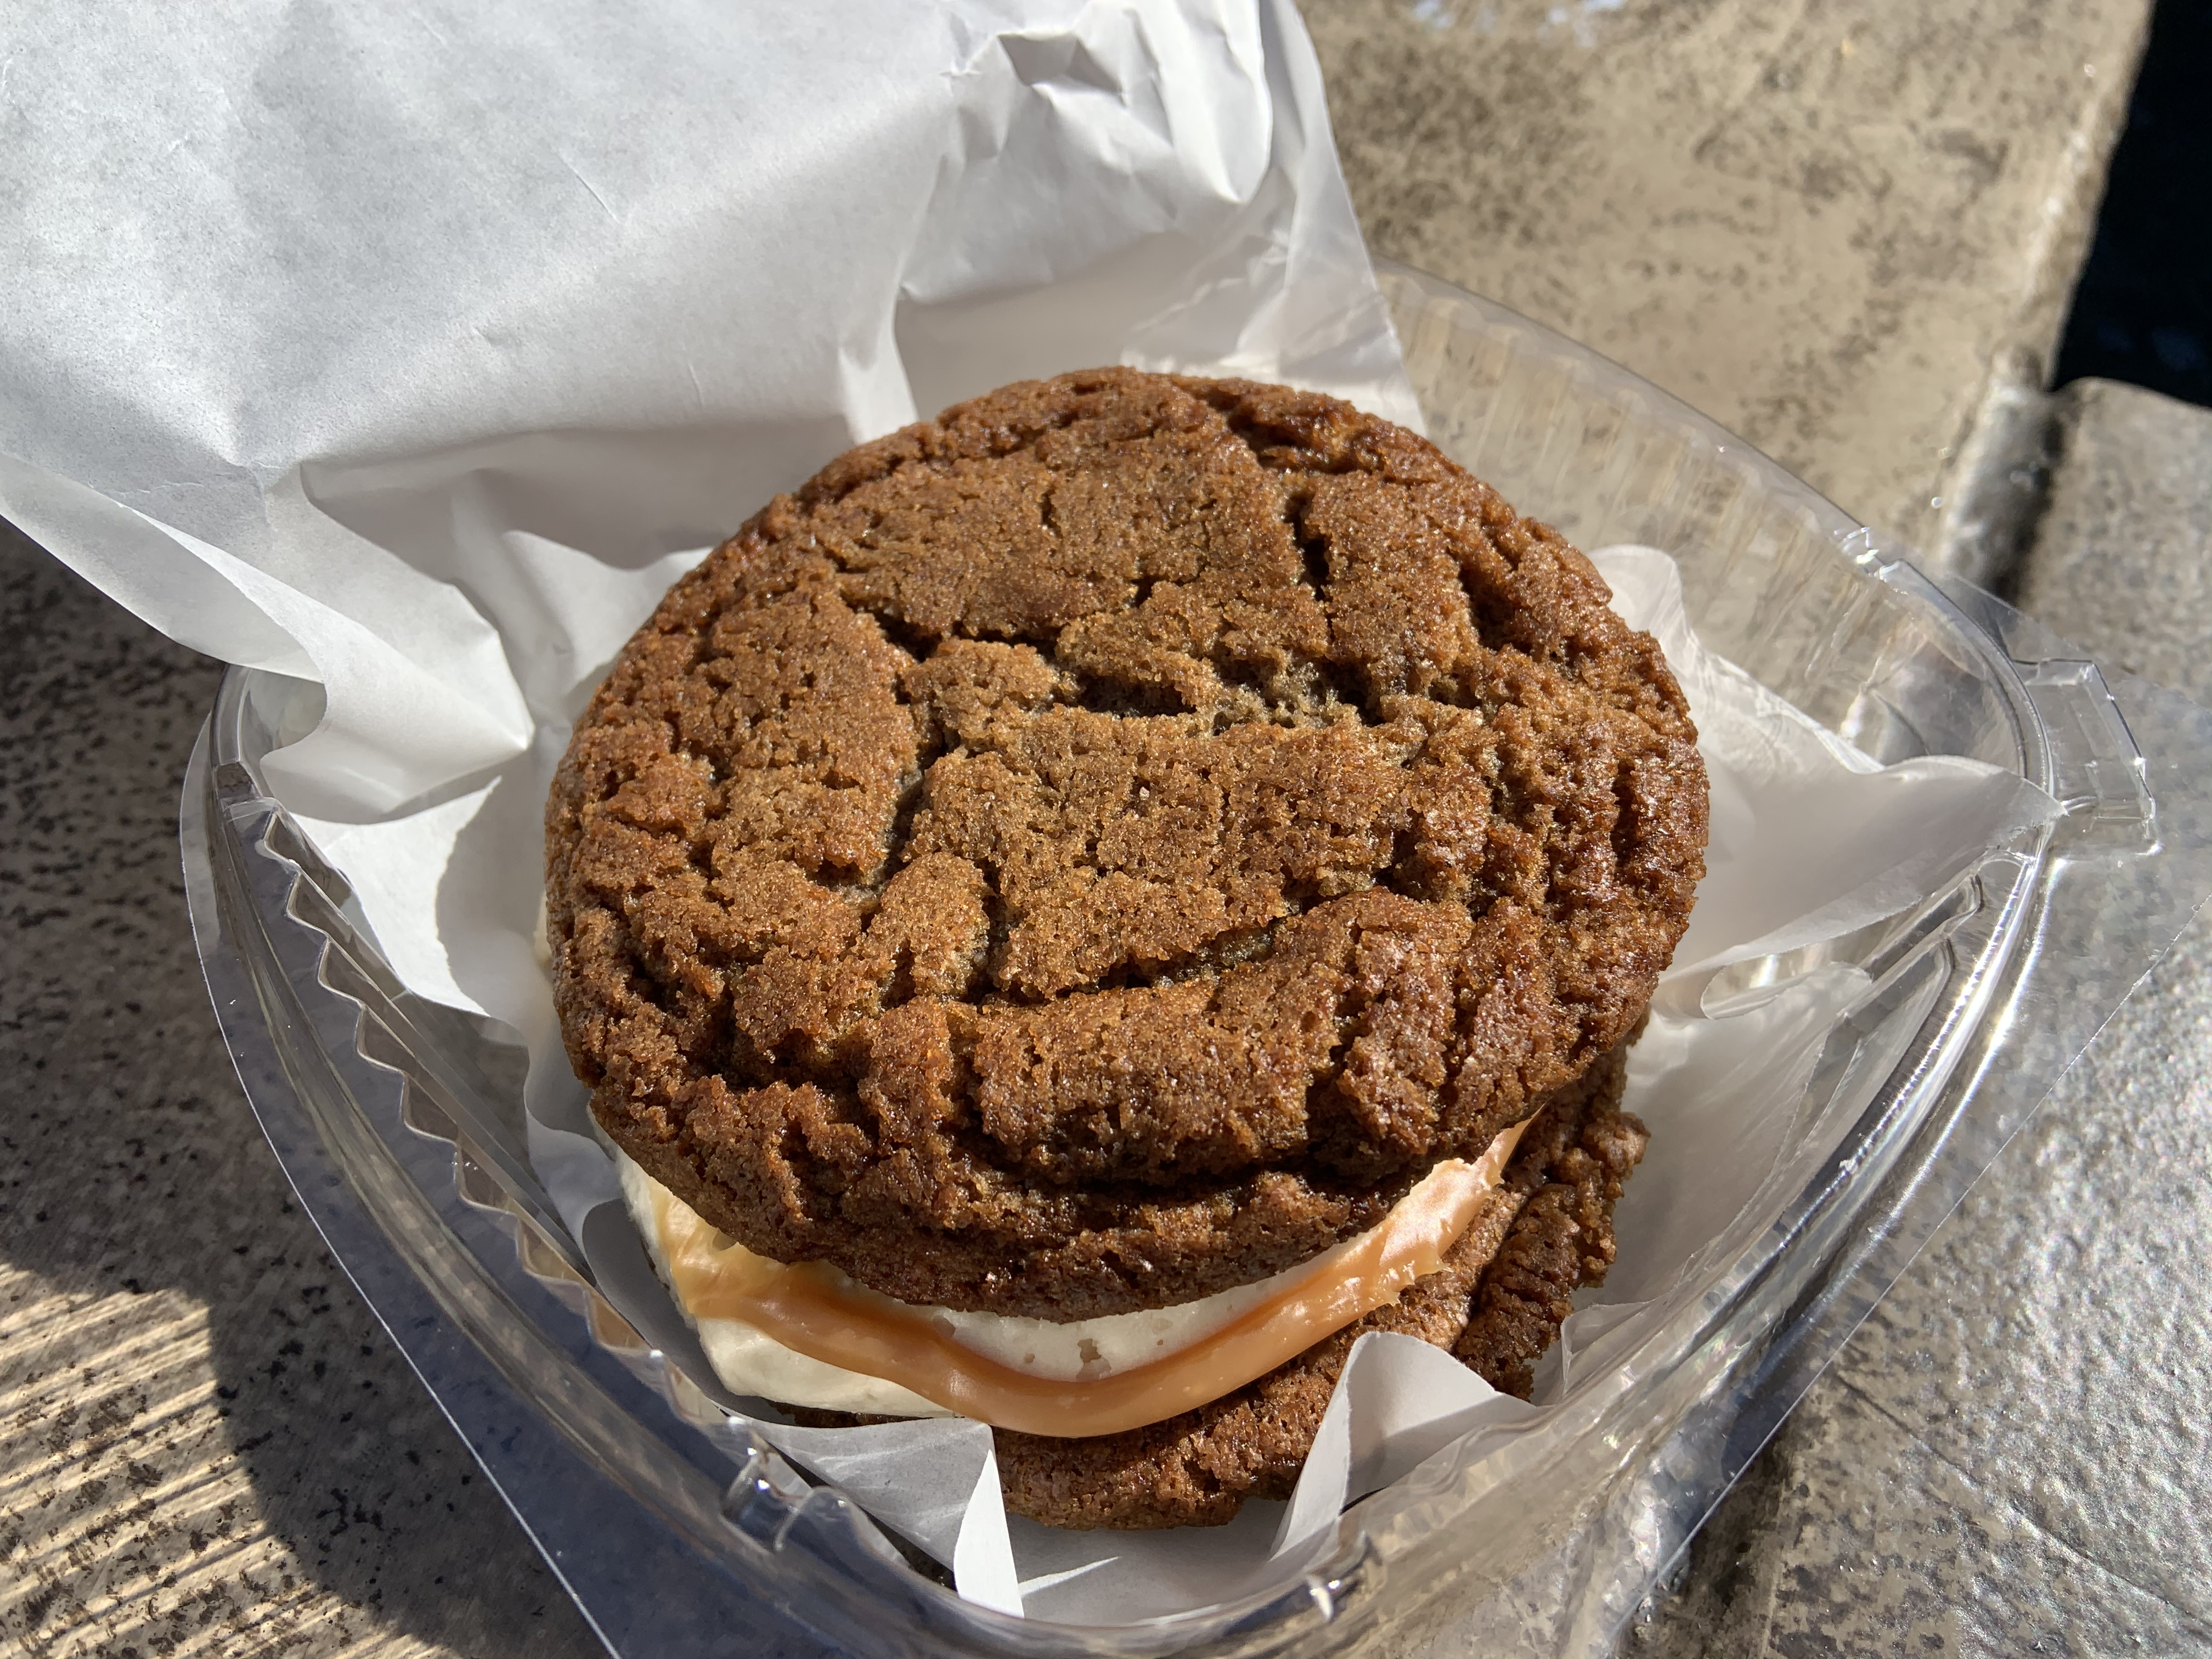 Gingerbread Cookie Sandwich Karamell Kuche 12/3/19 2